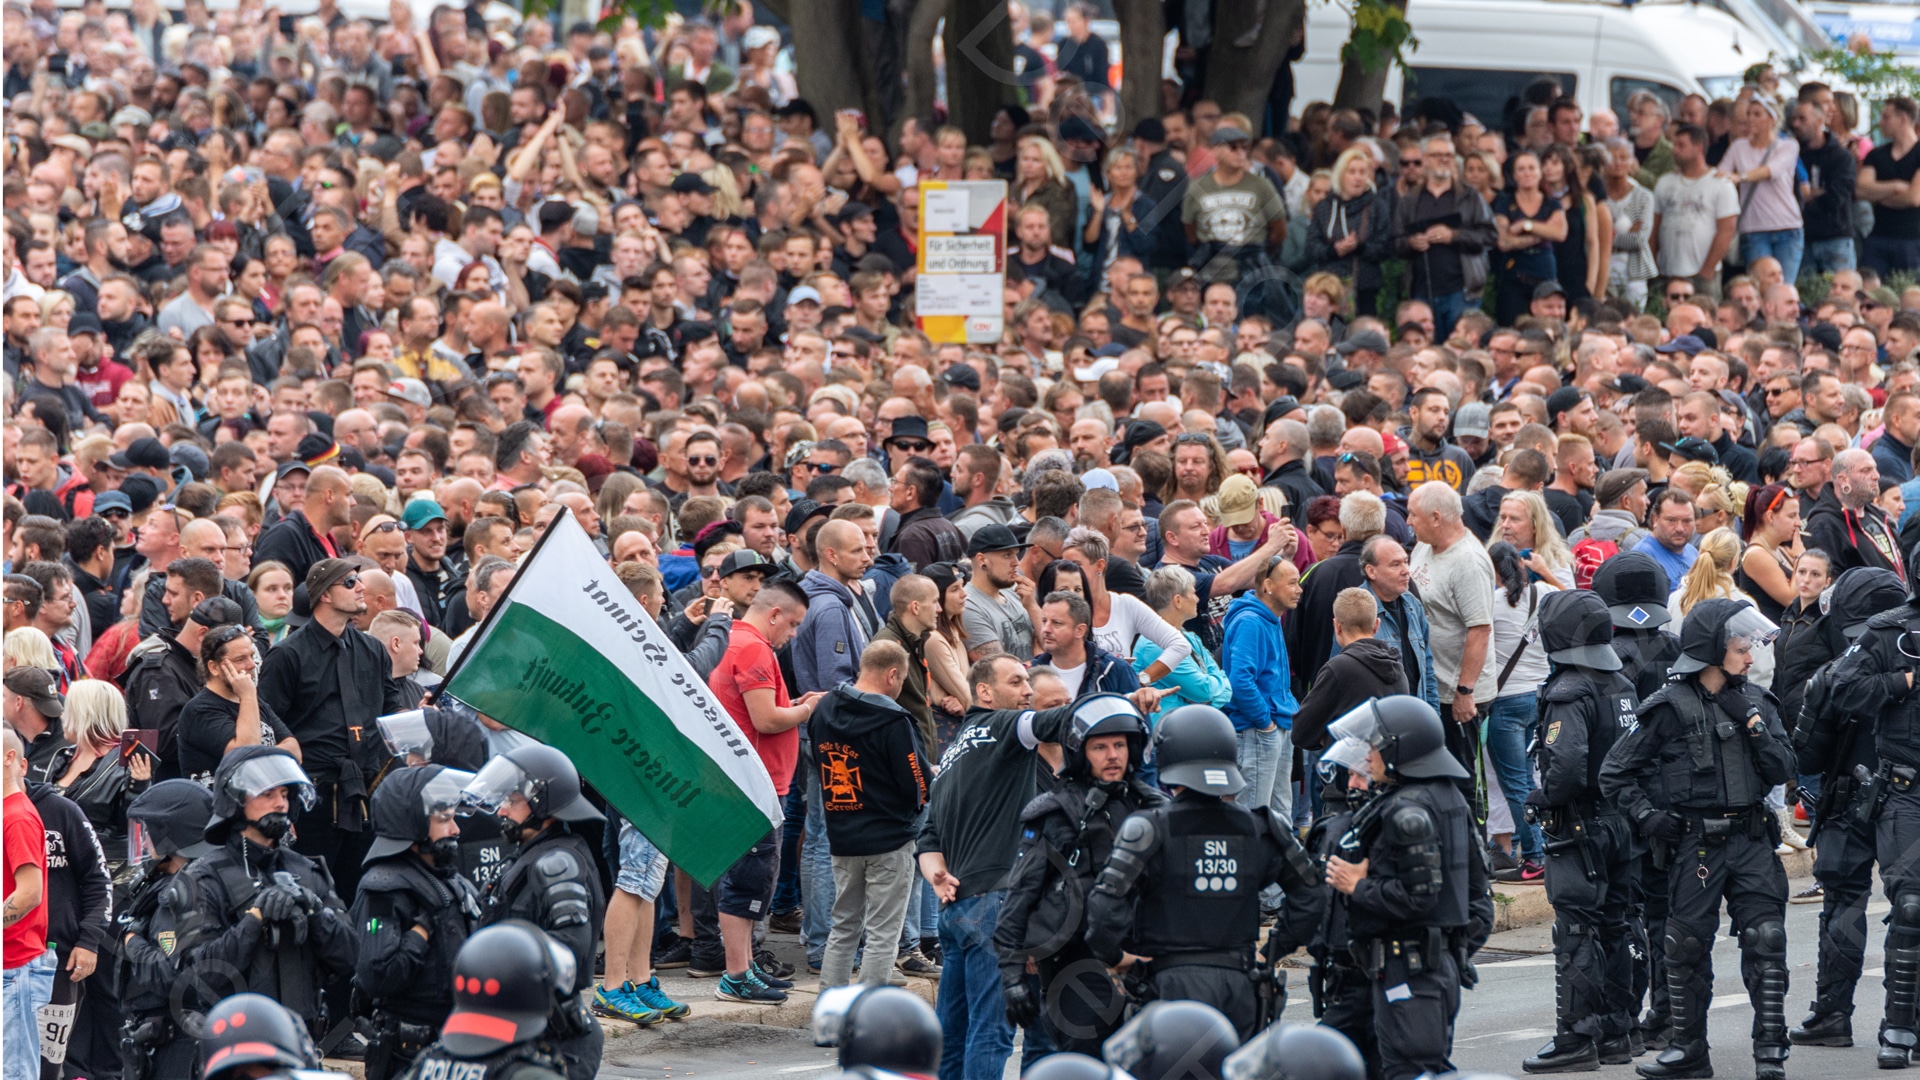 Die Ereignisse in Chemnitz waren ein Höhepunkt für Angriffe auf deutsche Journalisten. Das geht aus einer aktuellen Erhebung des Europäischen Zentrums für Presse- und Medienfreiheit (ECPMF) hervor